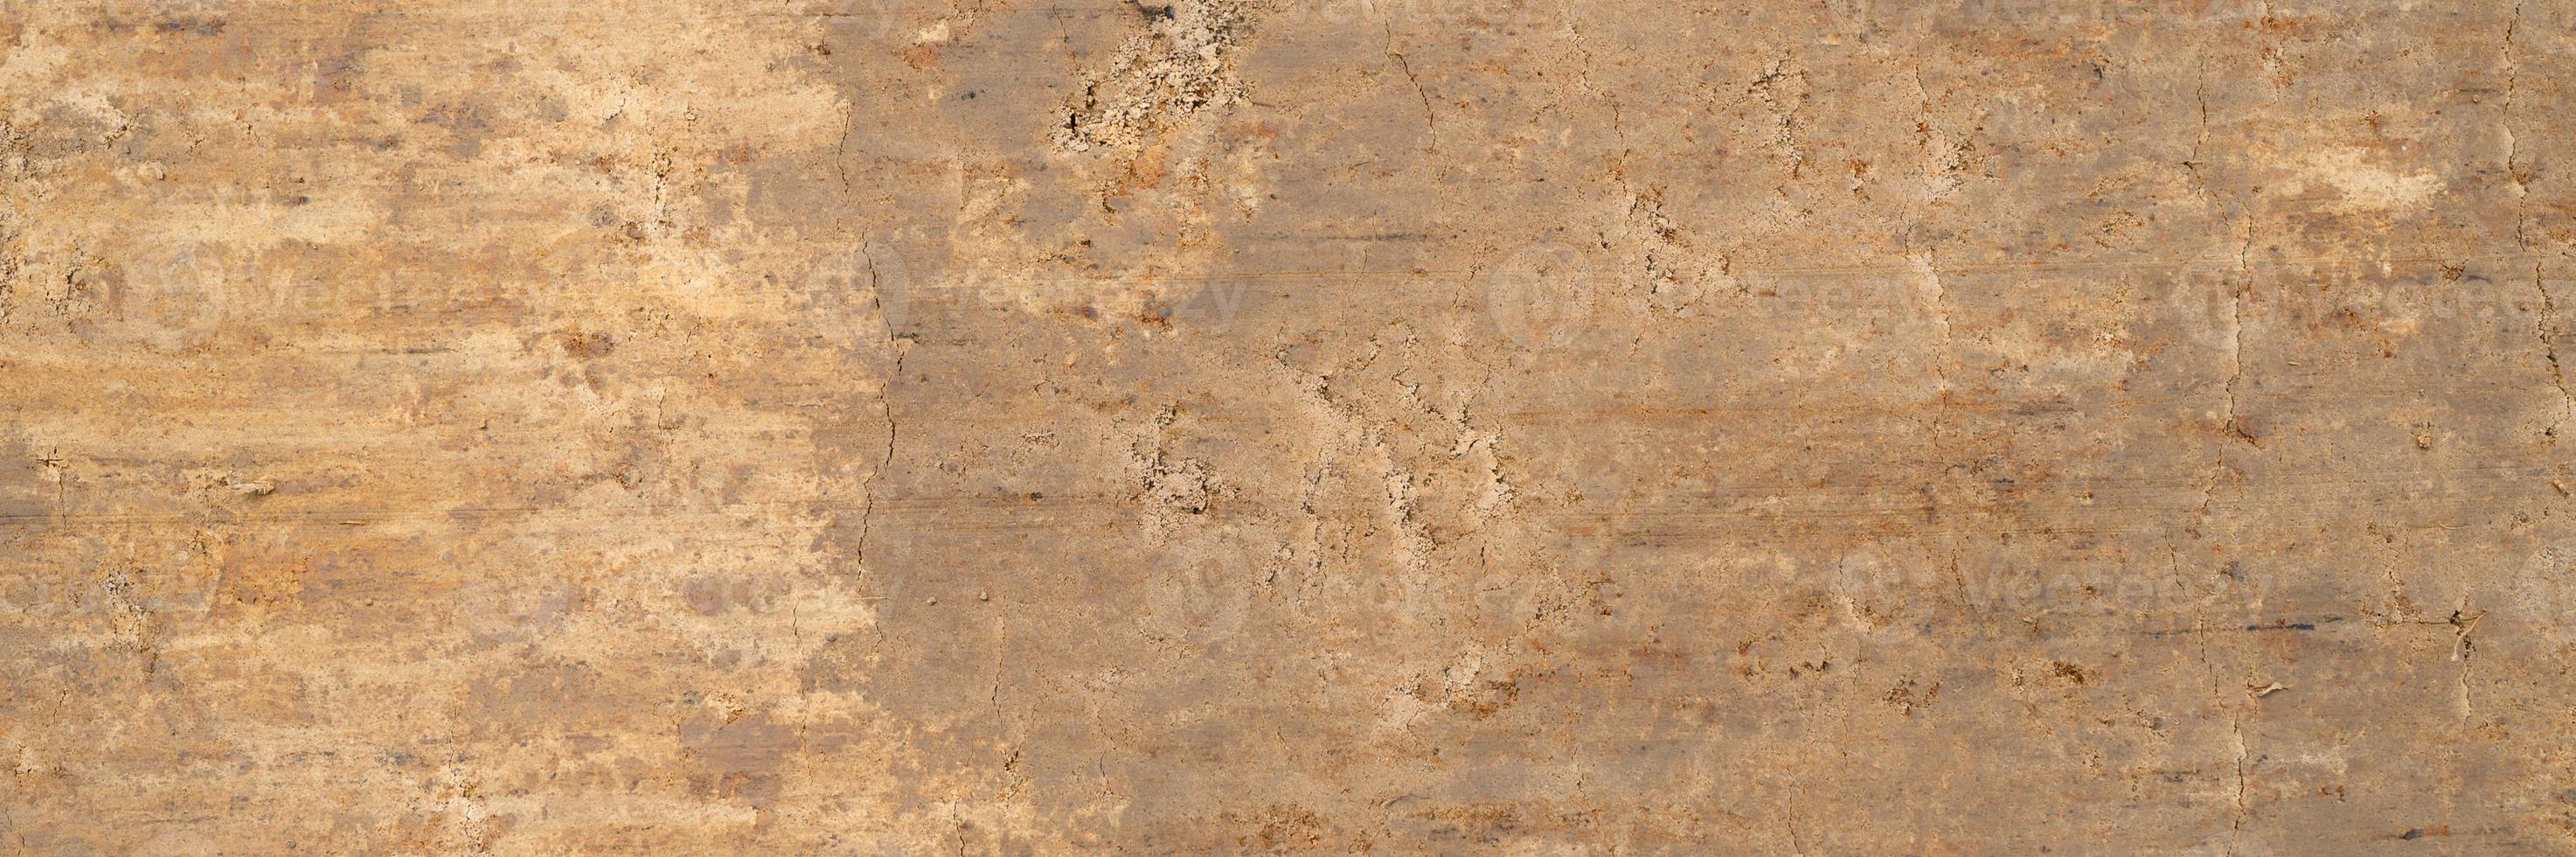 texture de fond de la surface lisse du sable de bois photo